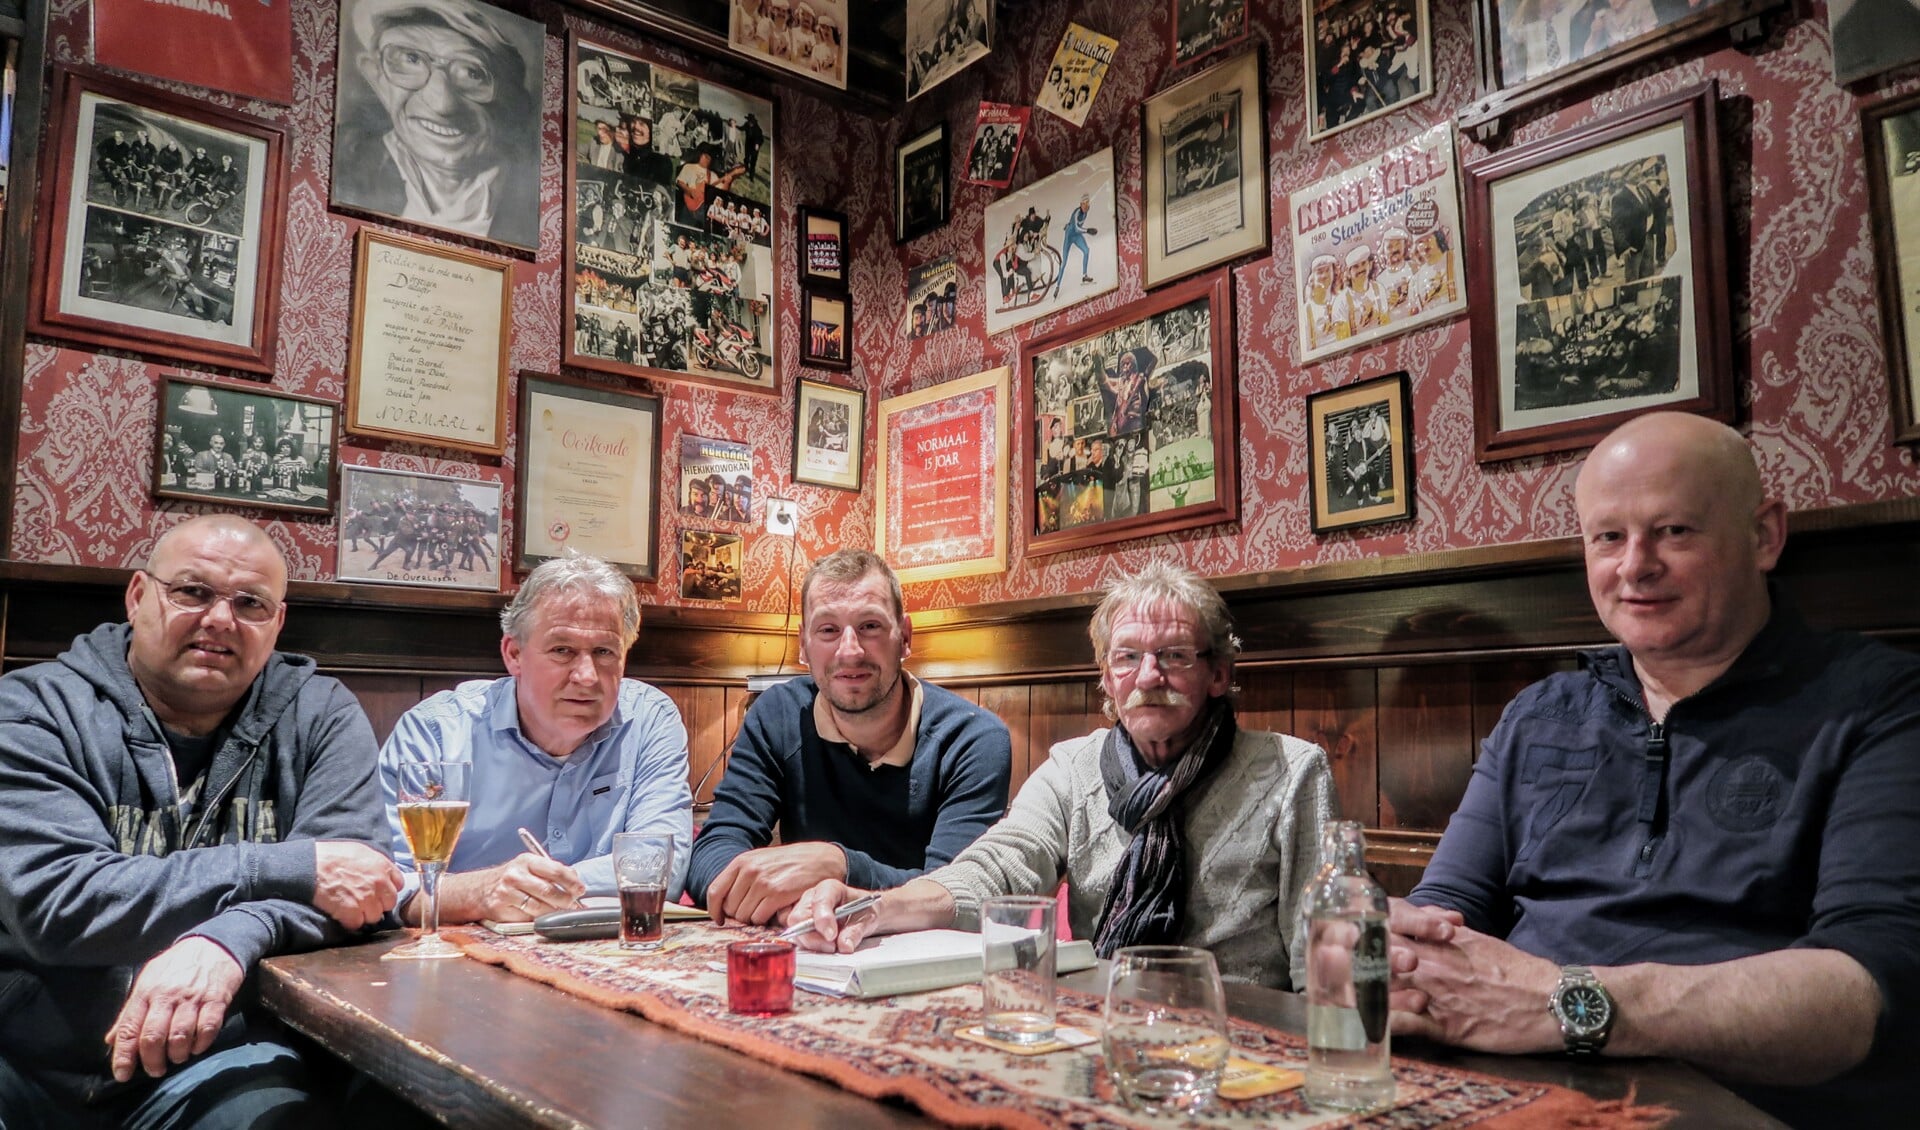 V.l.n.r. Jan Pol (Anhangerschap), Henk en Remon te Brake (De Tol), Henk Kelder en Ron Lam (Anhangerschap) vergaderen in de ‘Normaal-hoek’ bij café De Tol. Foto: Luuk Stam